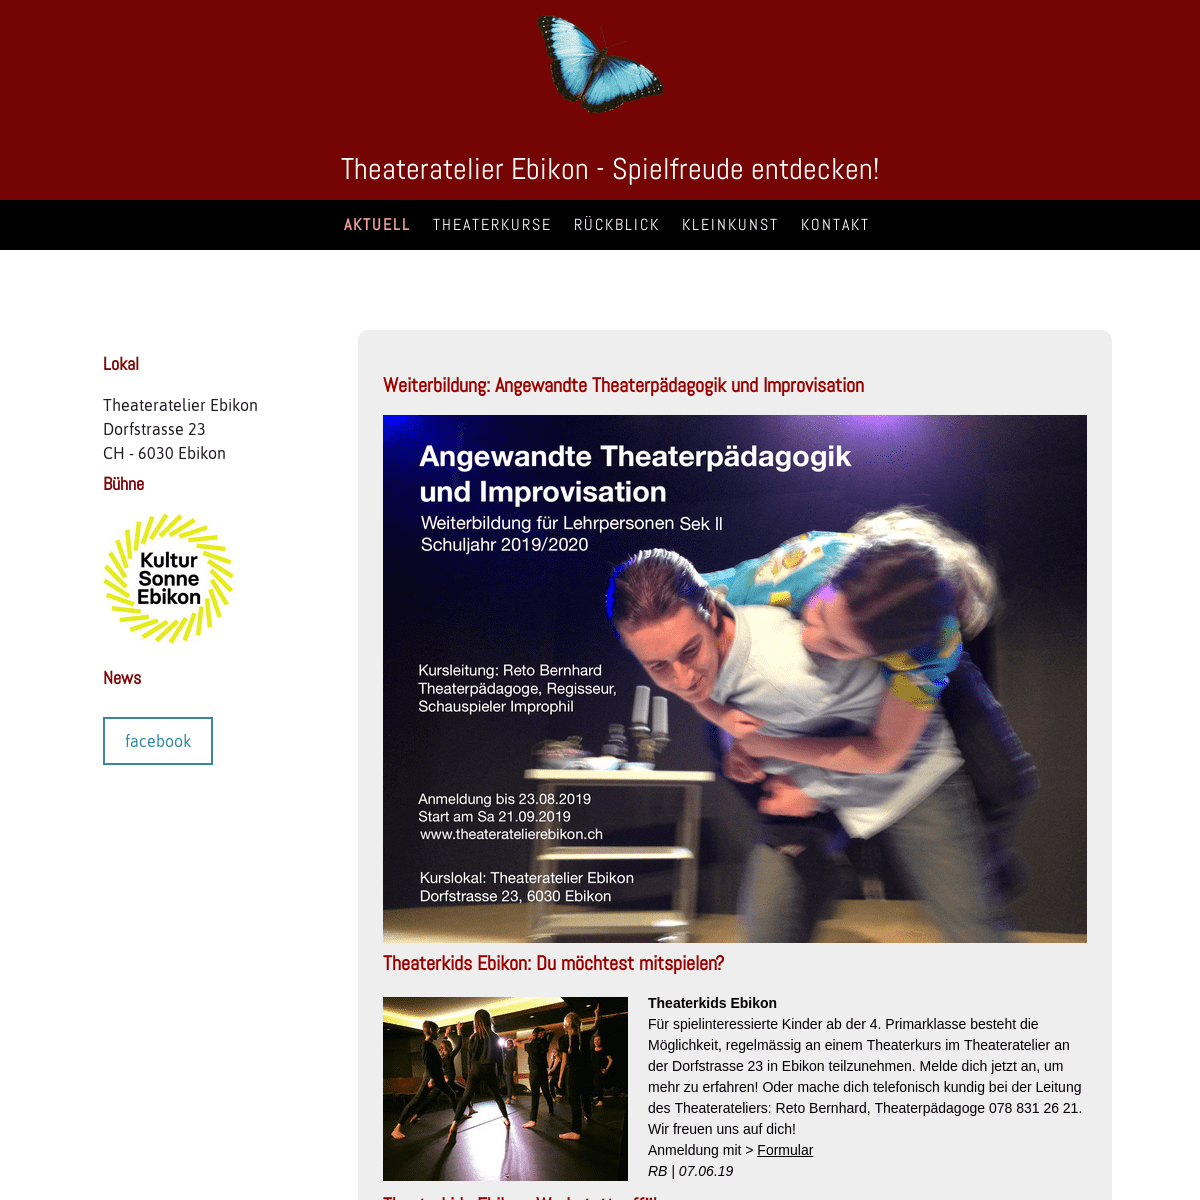 Weiterbildung: Angewandte Theaterpädagogik und Improvisation - theateratelierebikons Webseite!